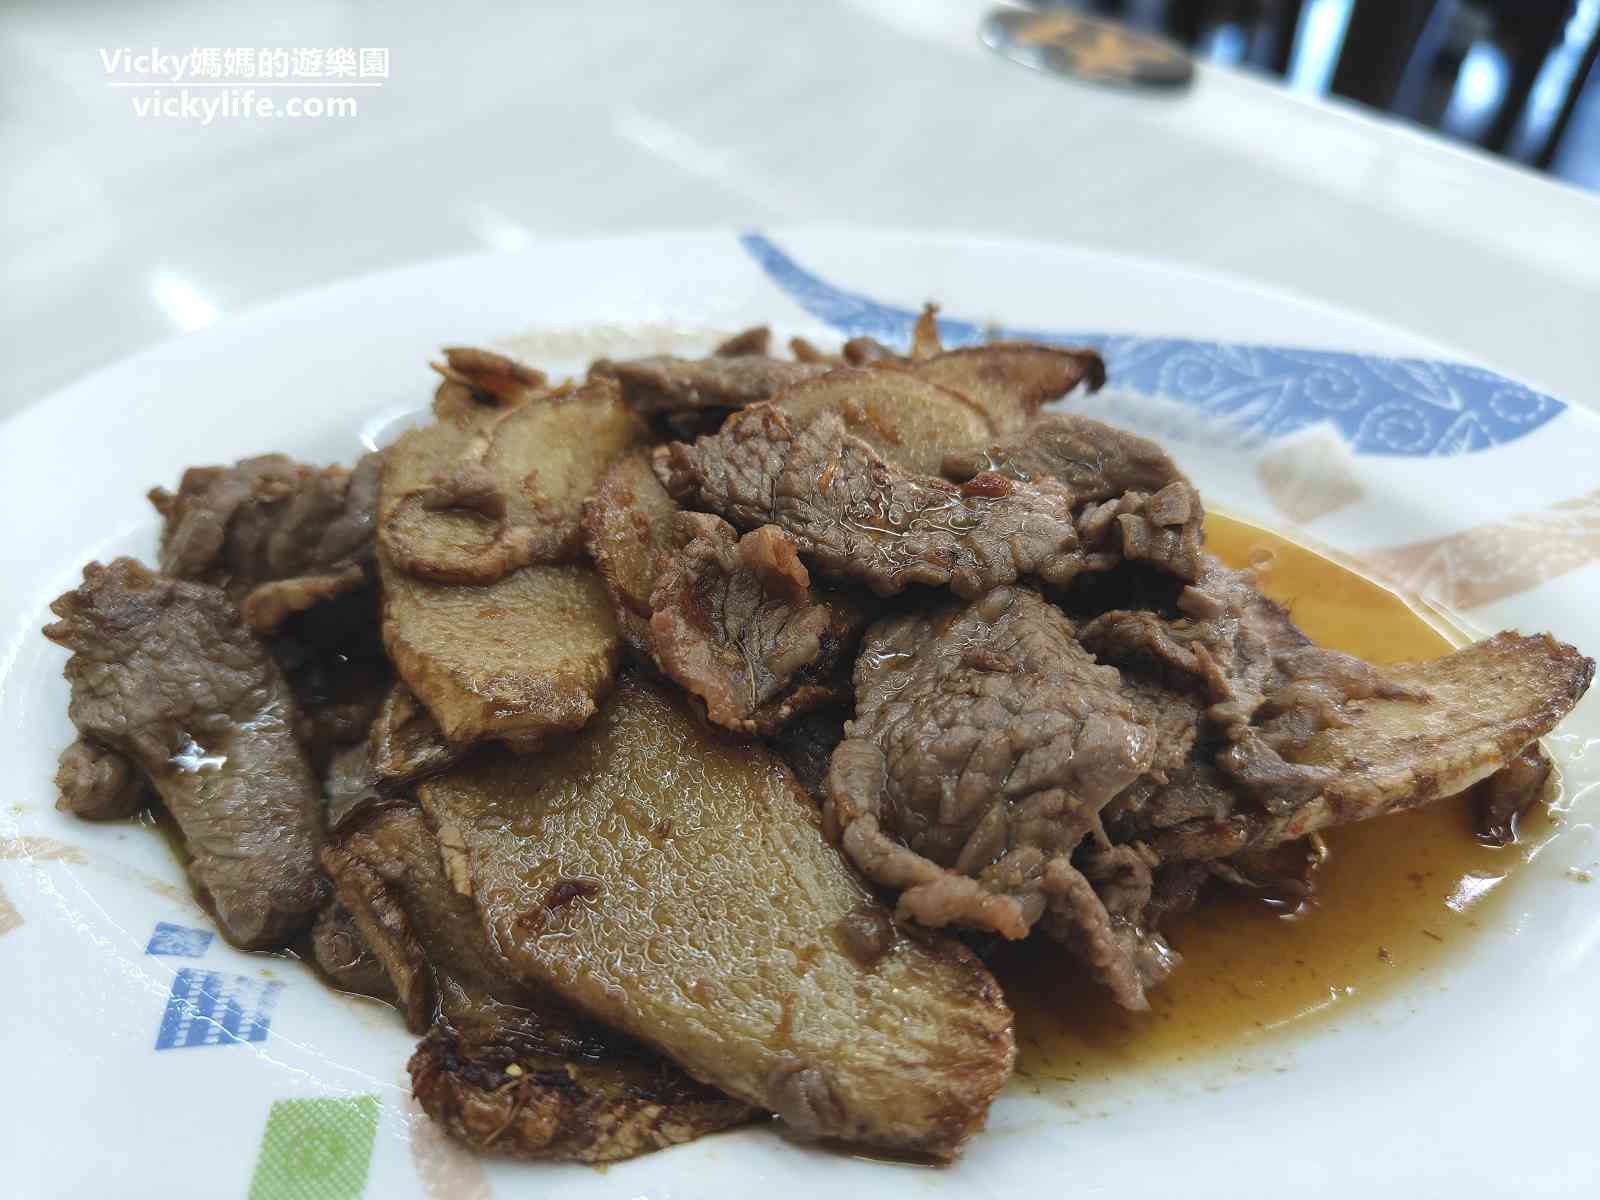 中華牛肉湯 菜單：台南永康區好喝牛肉湯，用餐環境優質，店家態度友善，店門口可停車